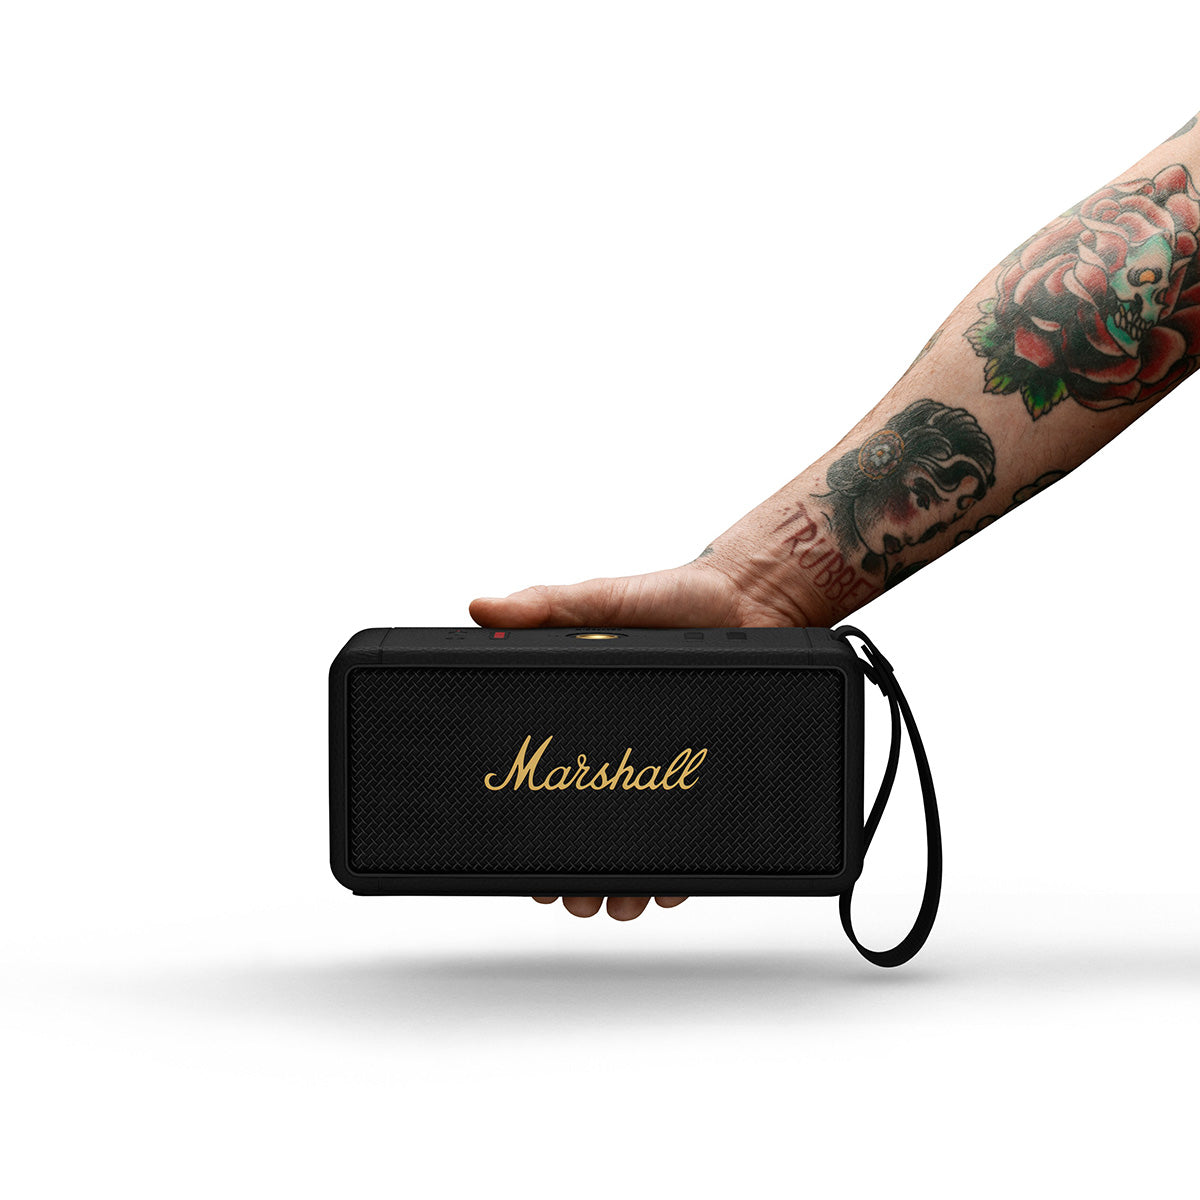 Marshall Middleton Wireless Speaker